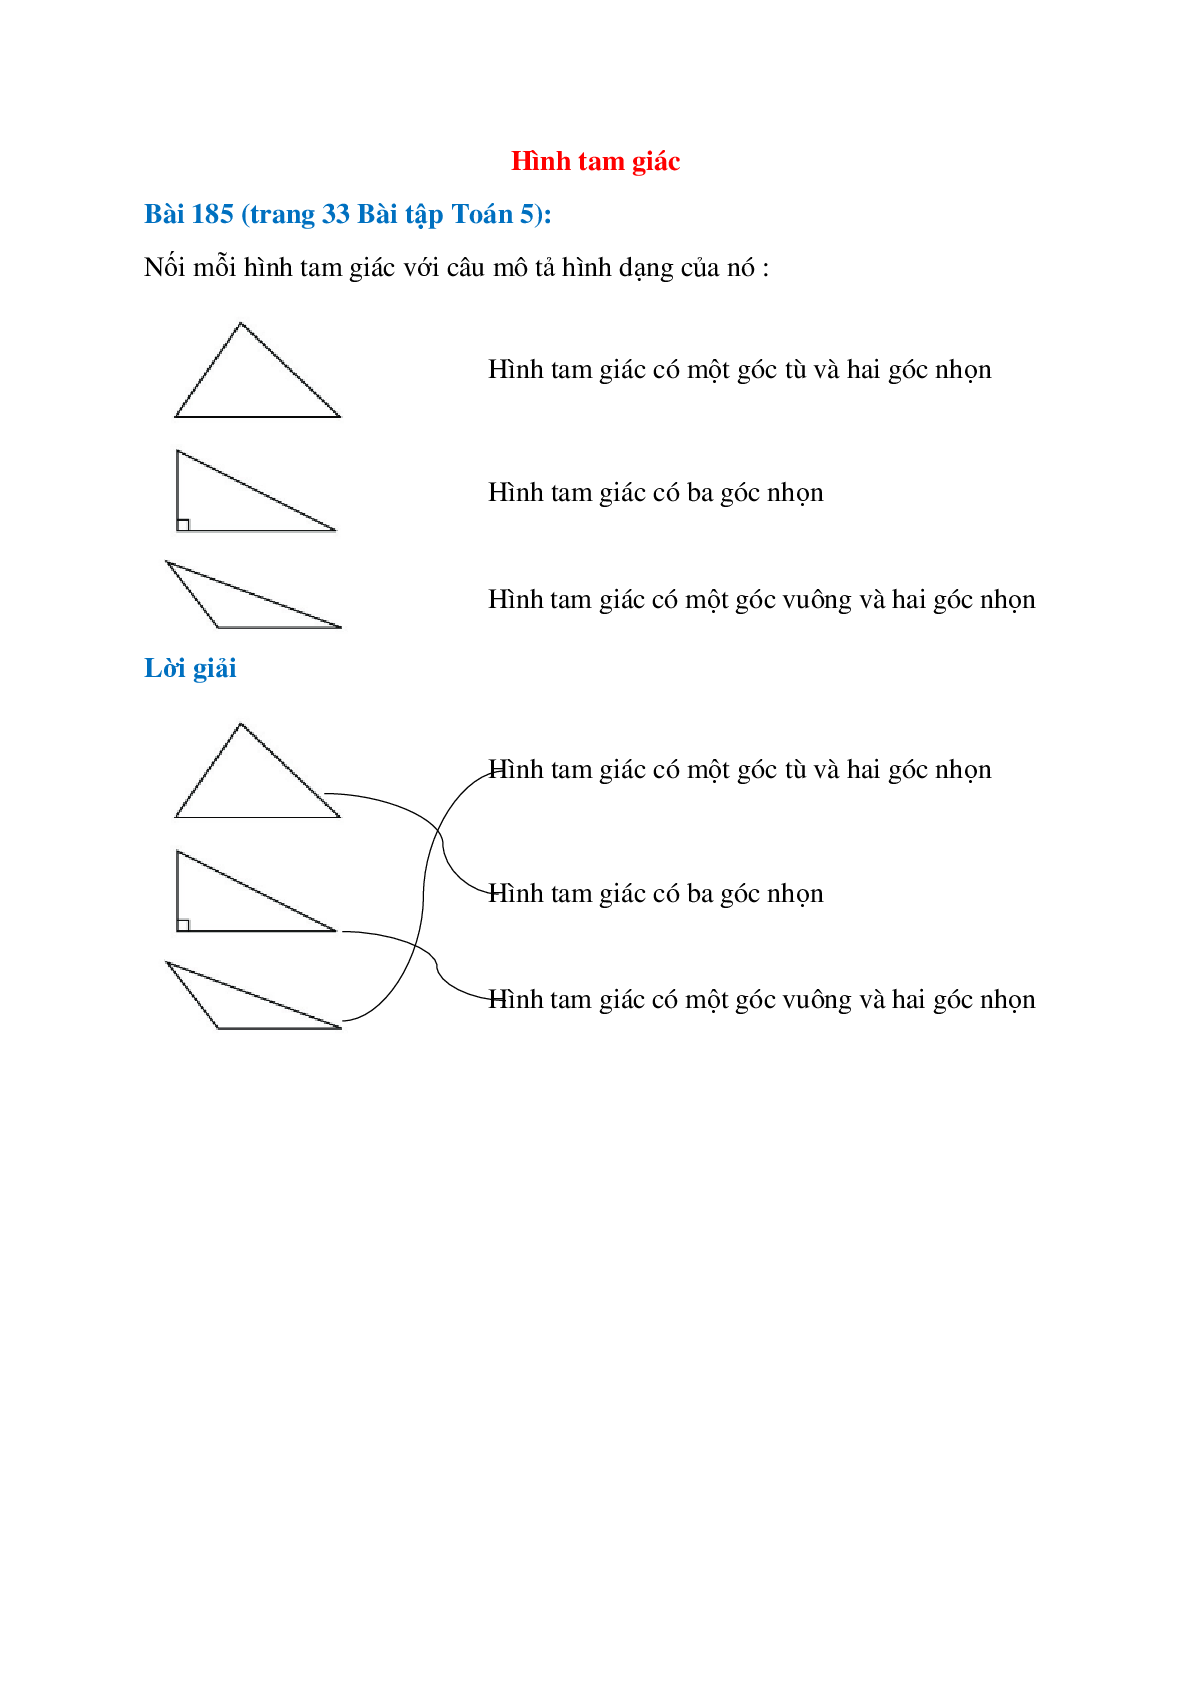 Nối mỗi hình tam giác với câu mô tả hình dạng của nó (trang 1)